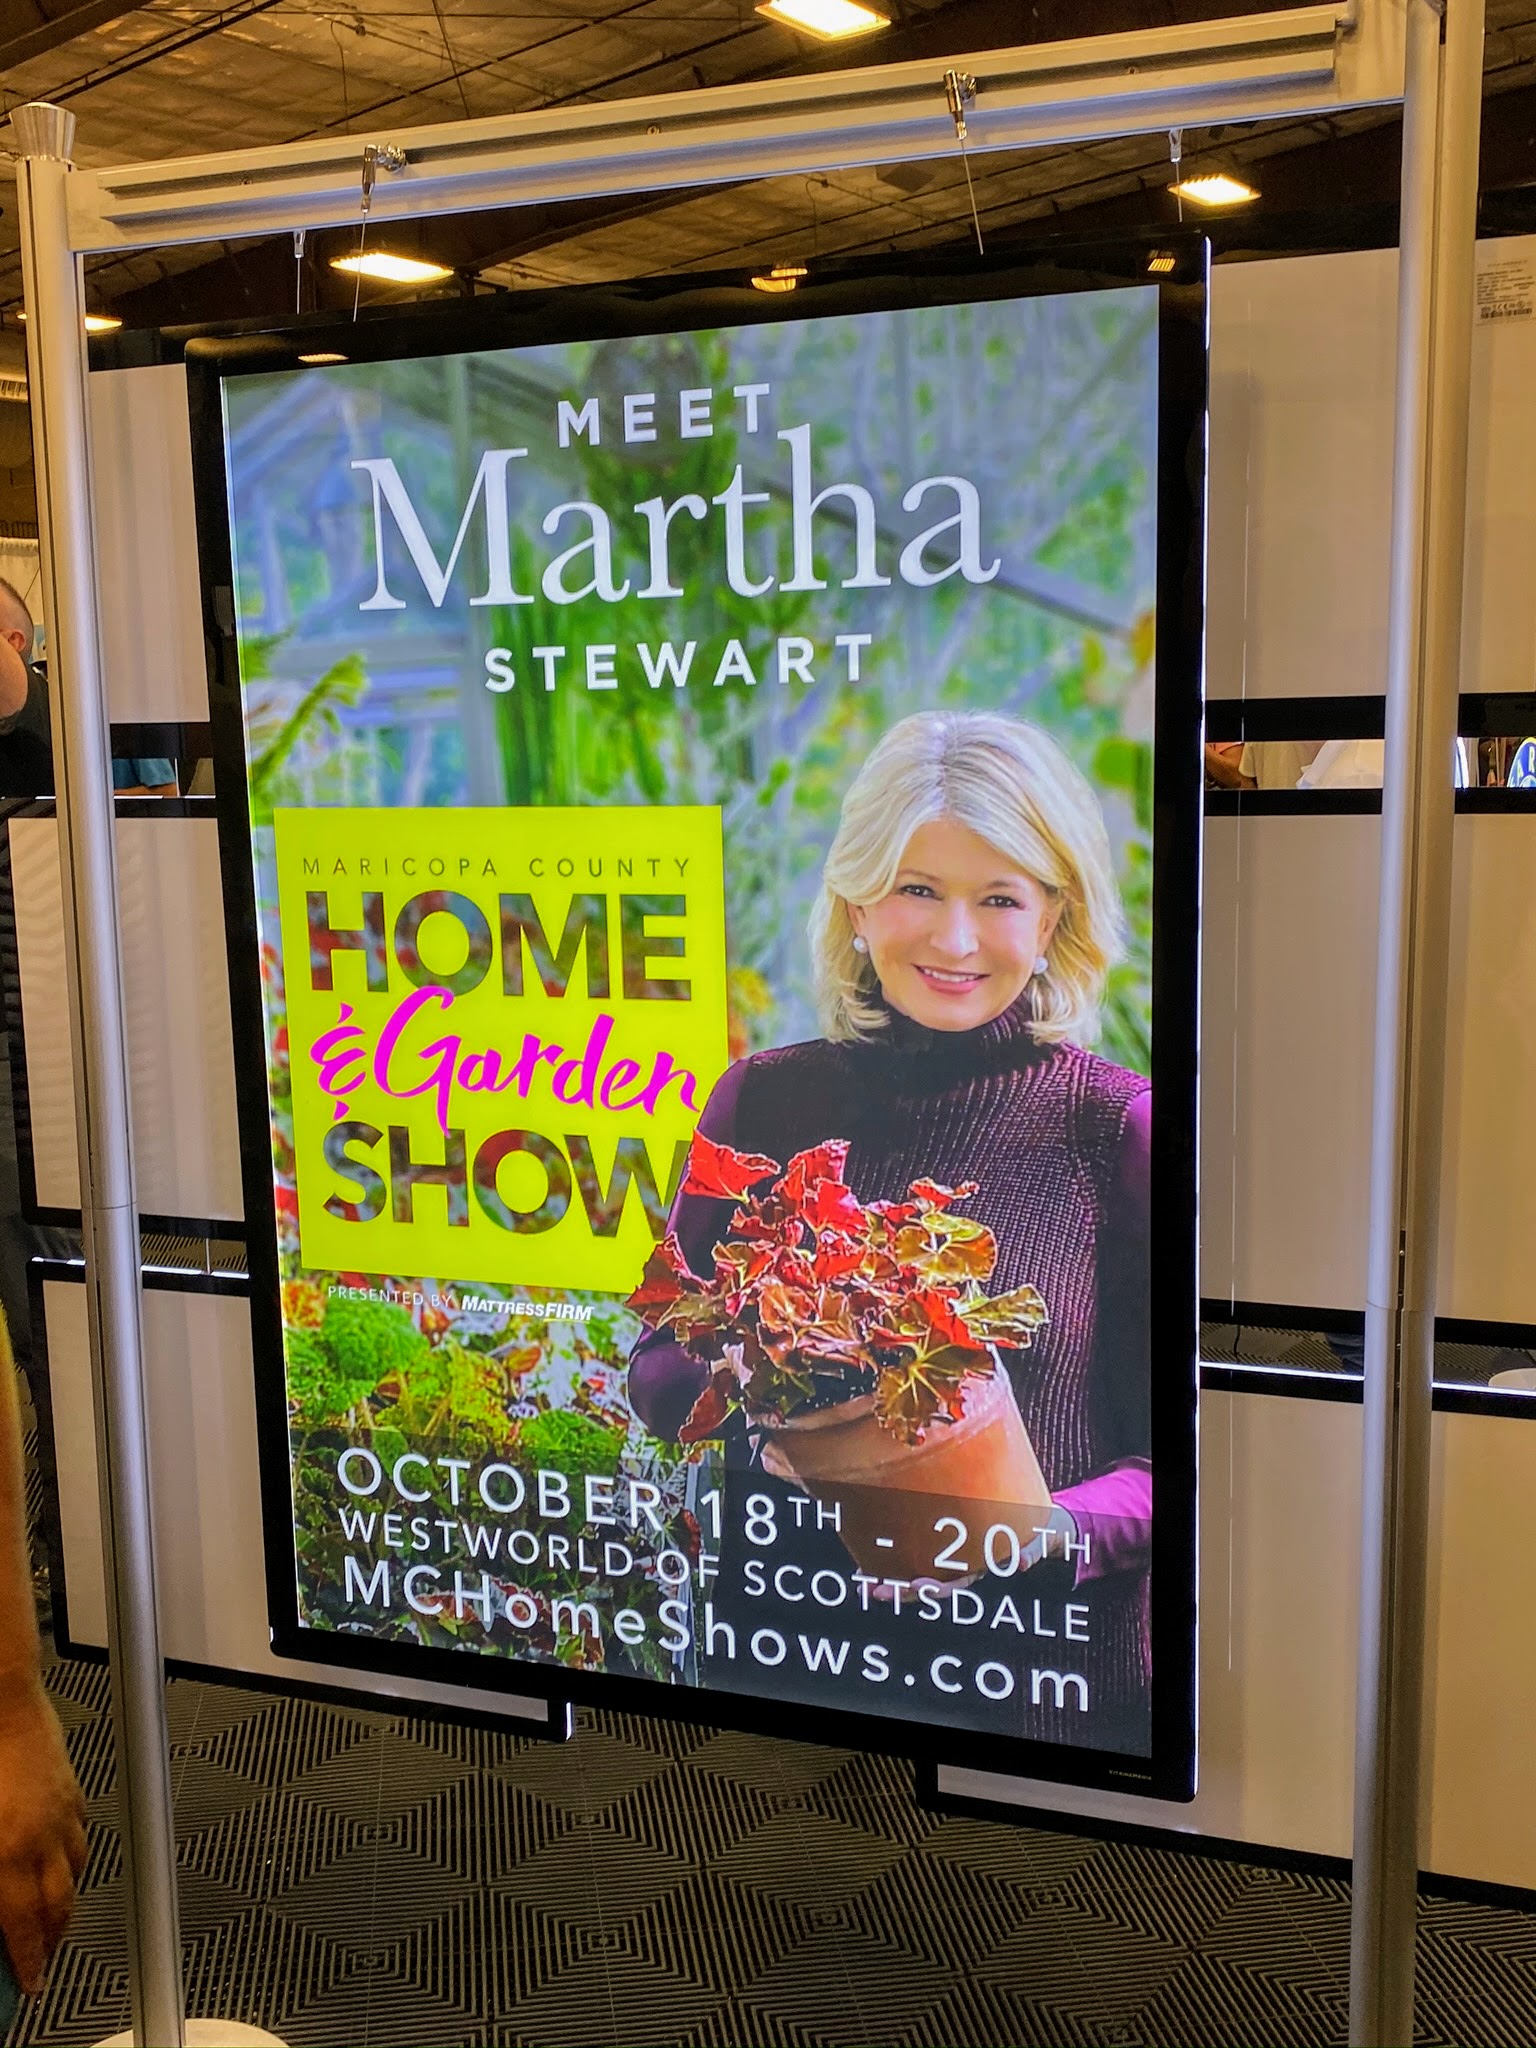 The Maricopa County Home Garden Show